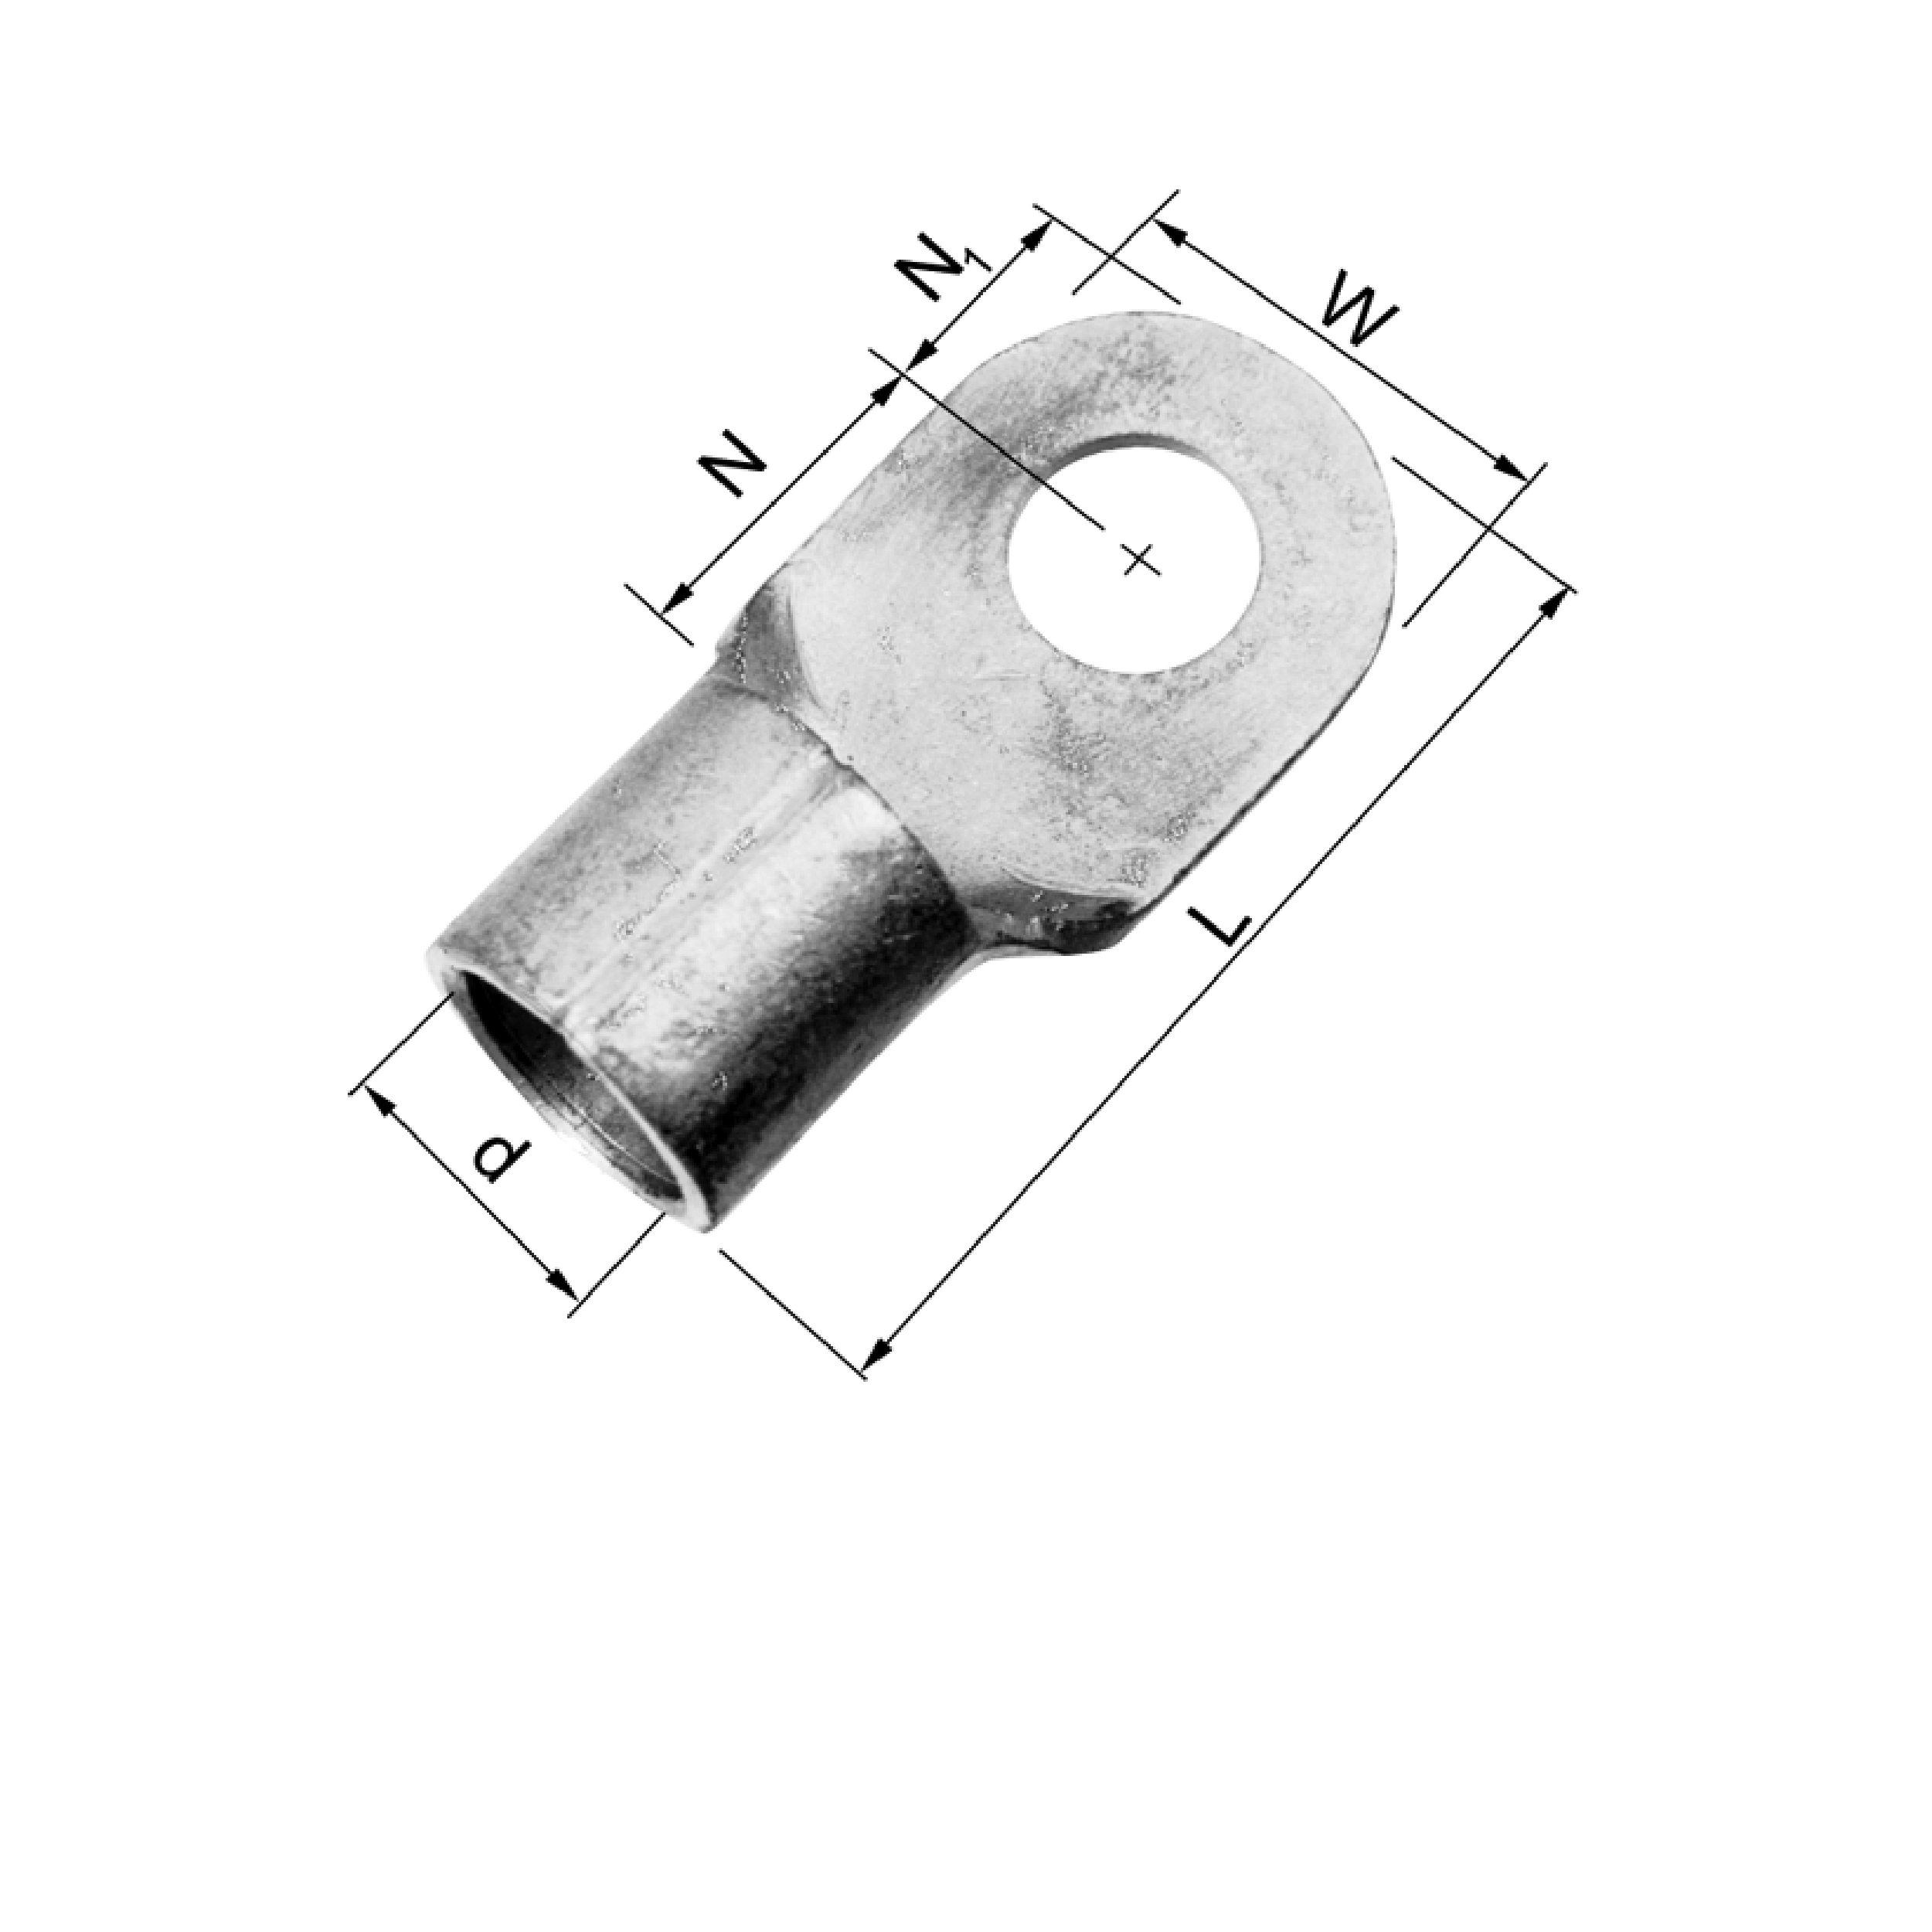 Elpress Copper Sheet Metal Lugs - DIN 46234 (10-240mm²) - B35-12R, B50-10R, B50-12R, B150-16R